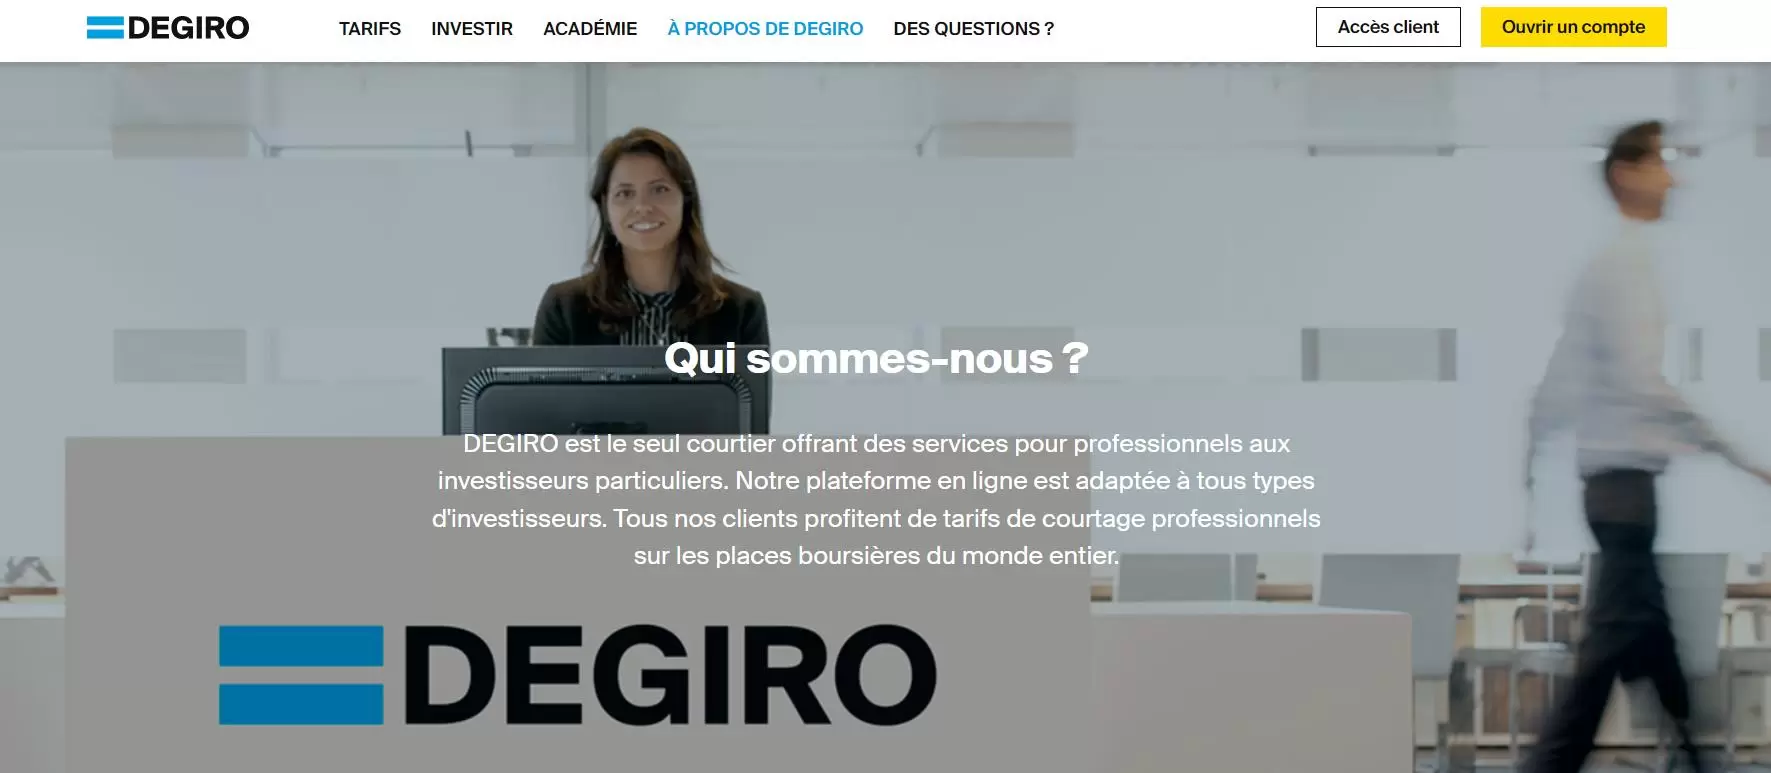 DEGIRO broker website